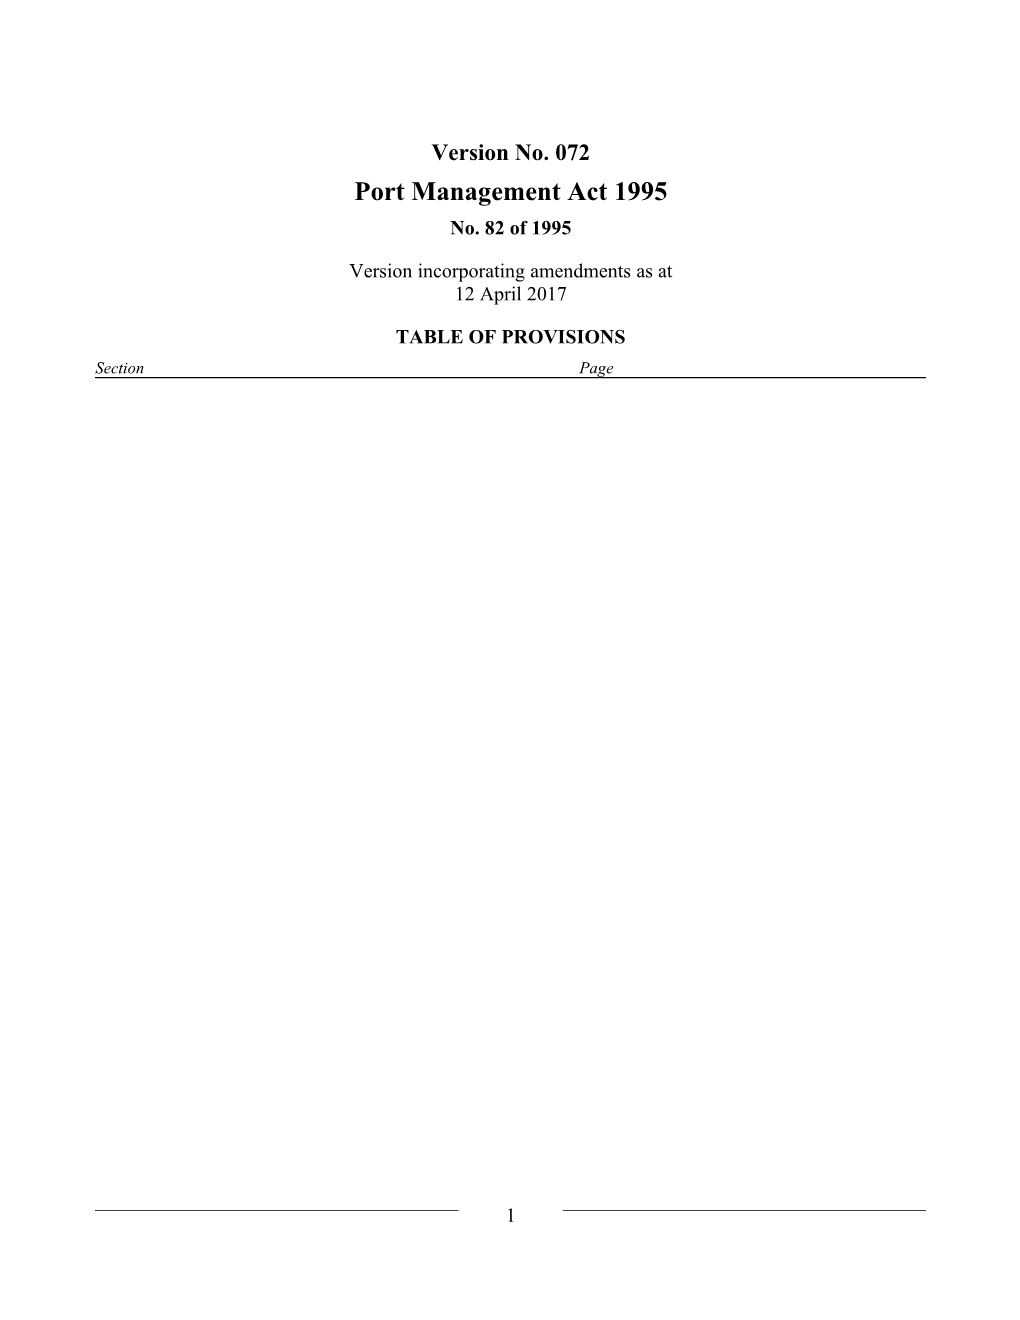 Port Management Act 1995